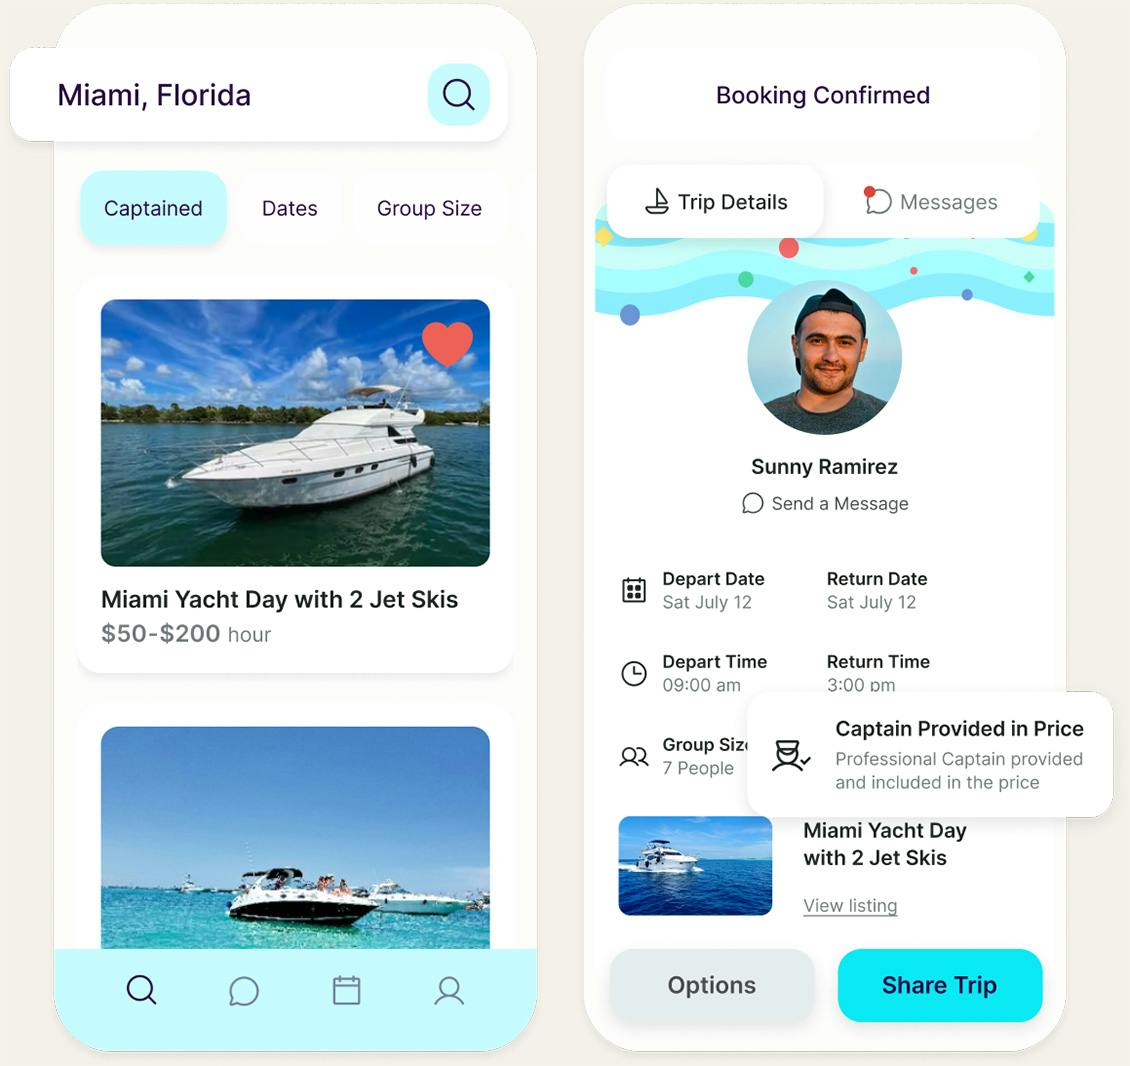 Imagens do aplicativo móvel destacando os recursos de busca e reserva de viagem com o capitão incluído no preço